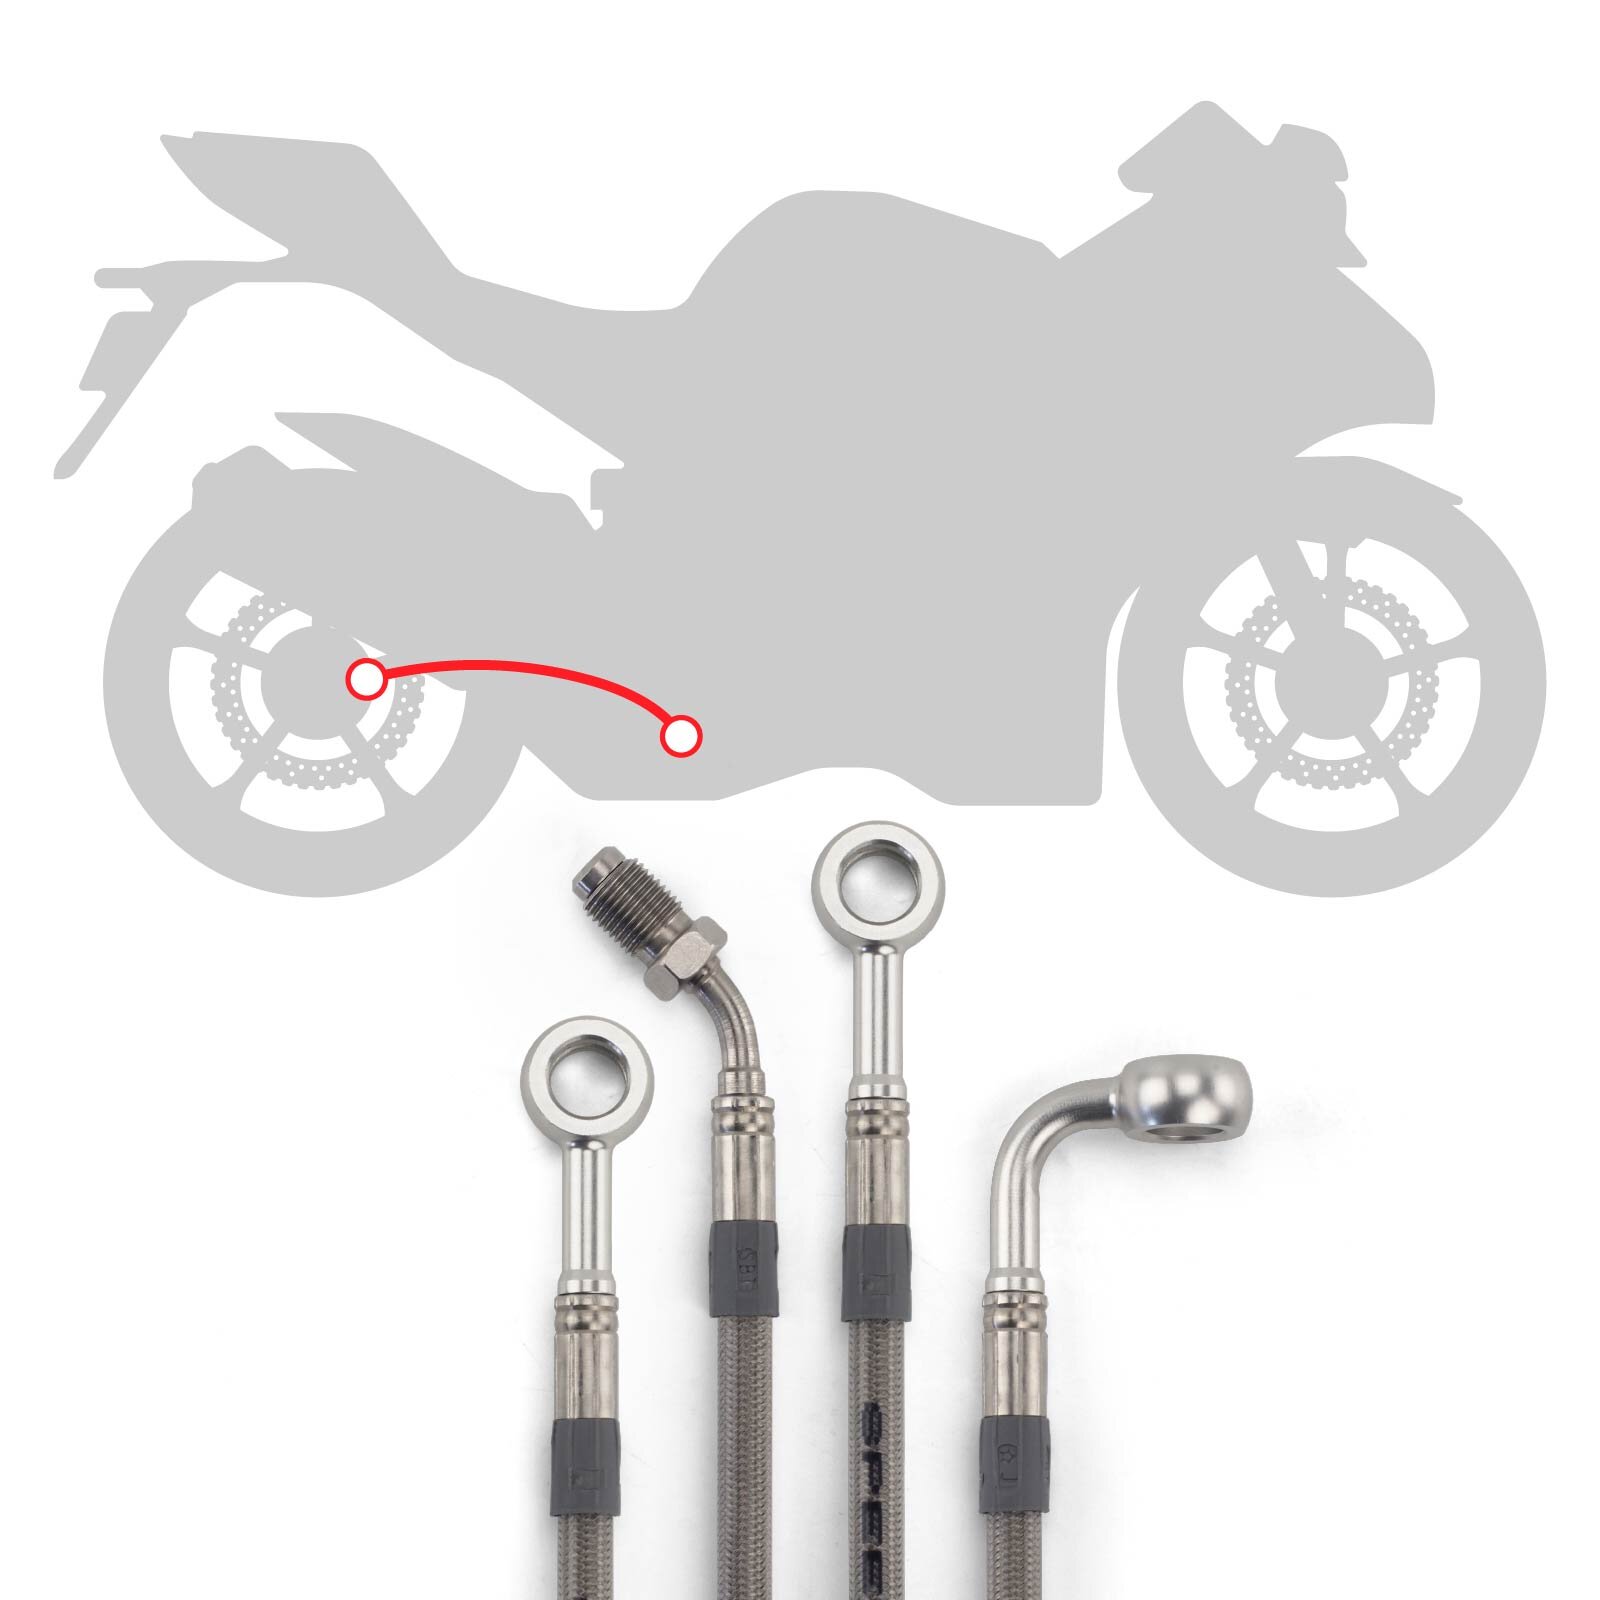 Stahlflex Bremsleitungs Kit mit silbernen Fittings und Leitungen mit transparenter Ummantelung, Infografik für die Verlegung der Leitungen hinten